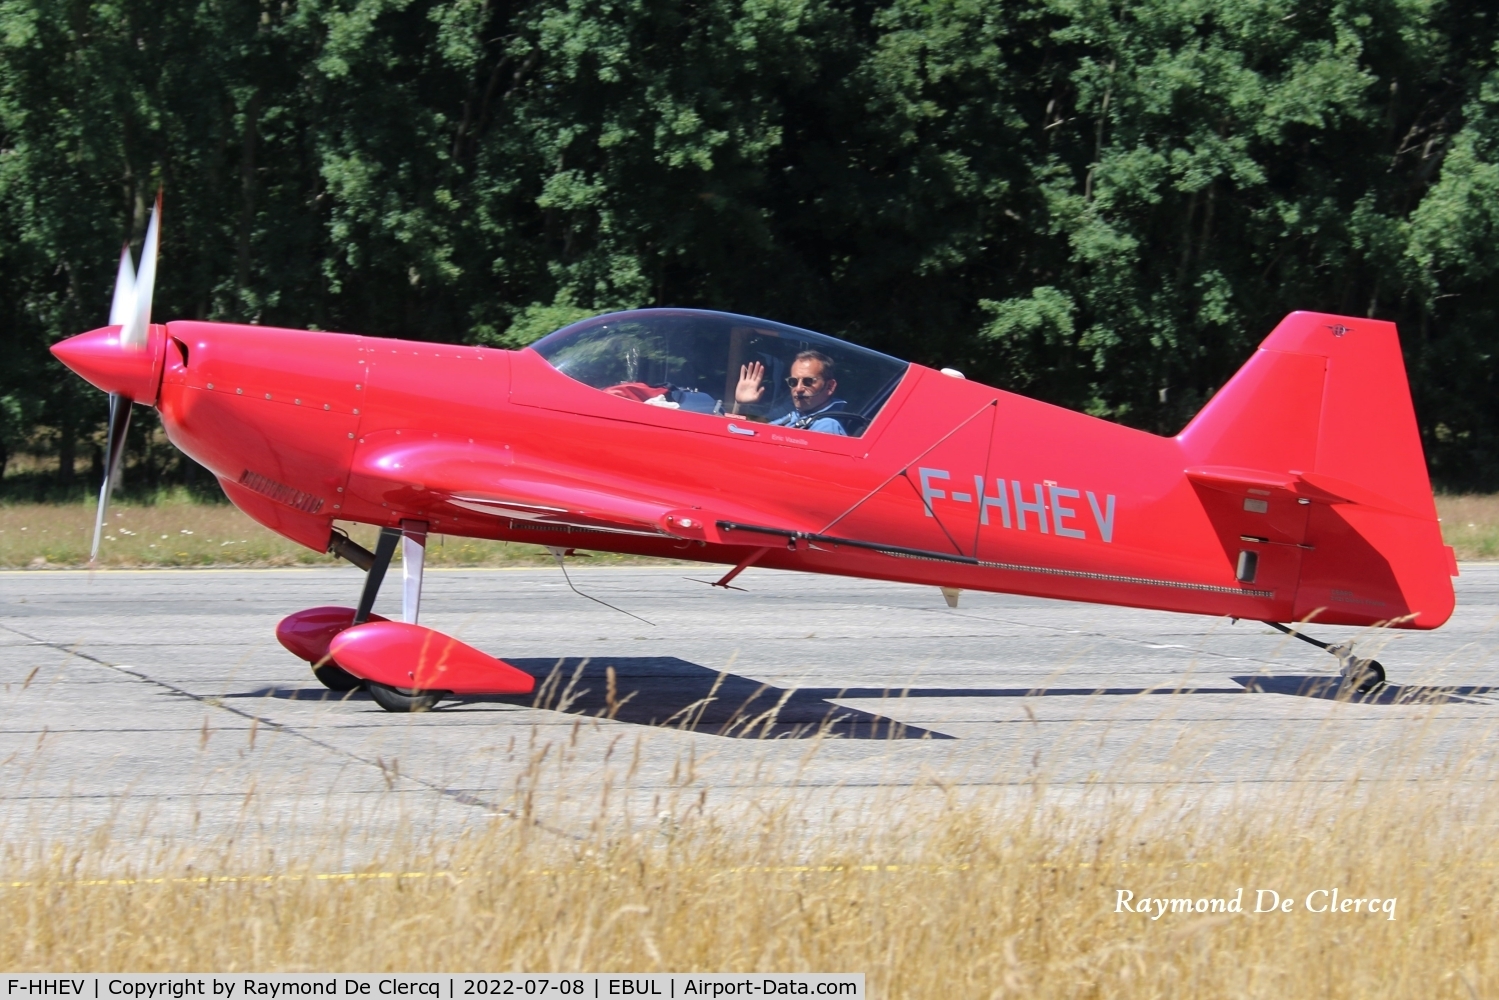 F-HHEV, Mudry CAP-222 C/N 02, At Ursel Avia 2022.